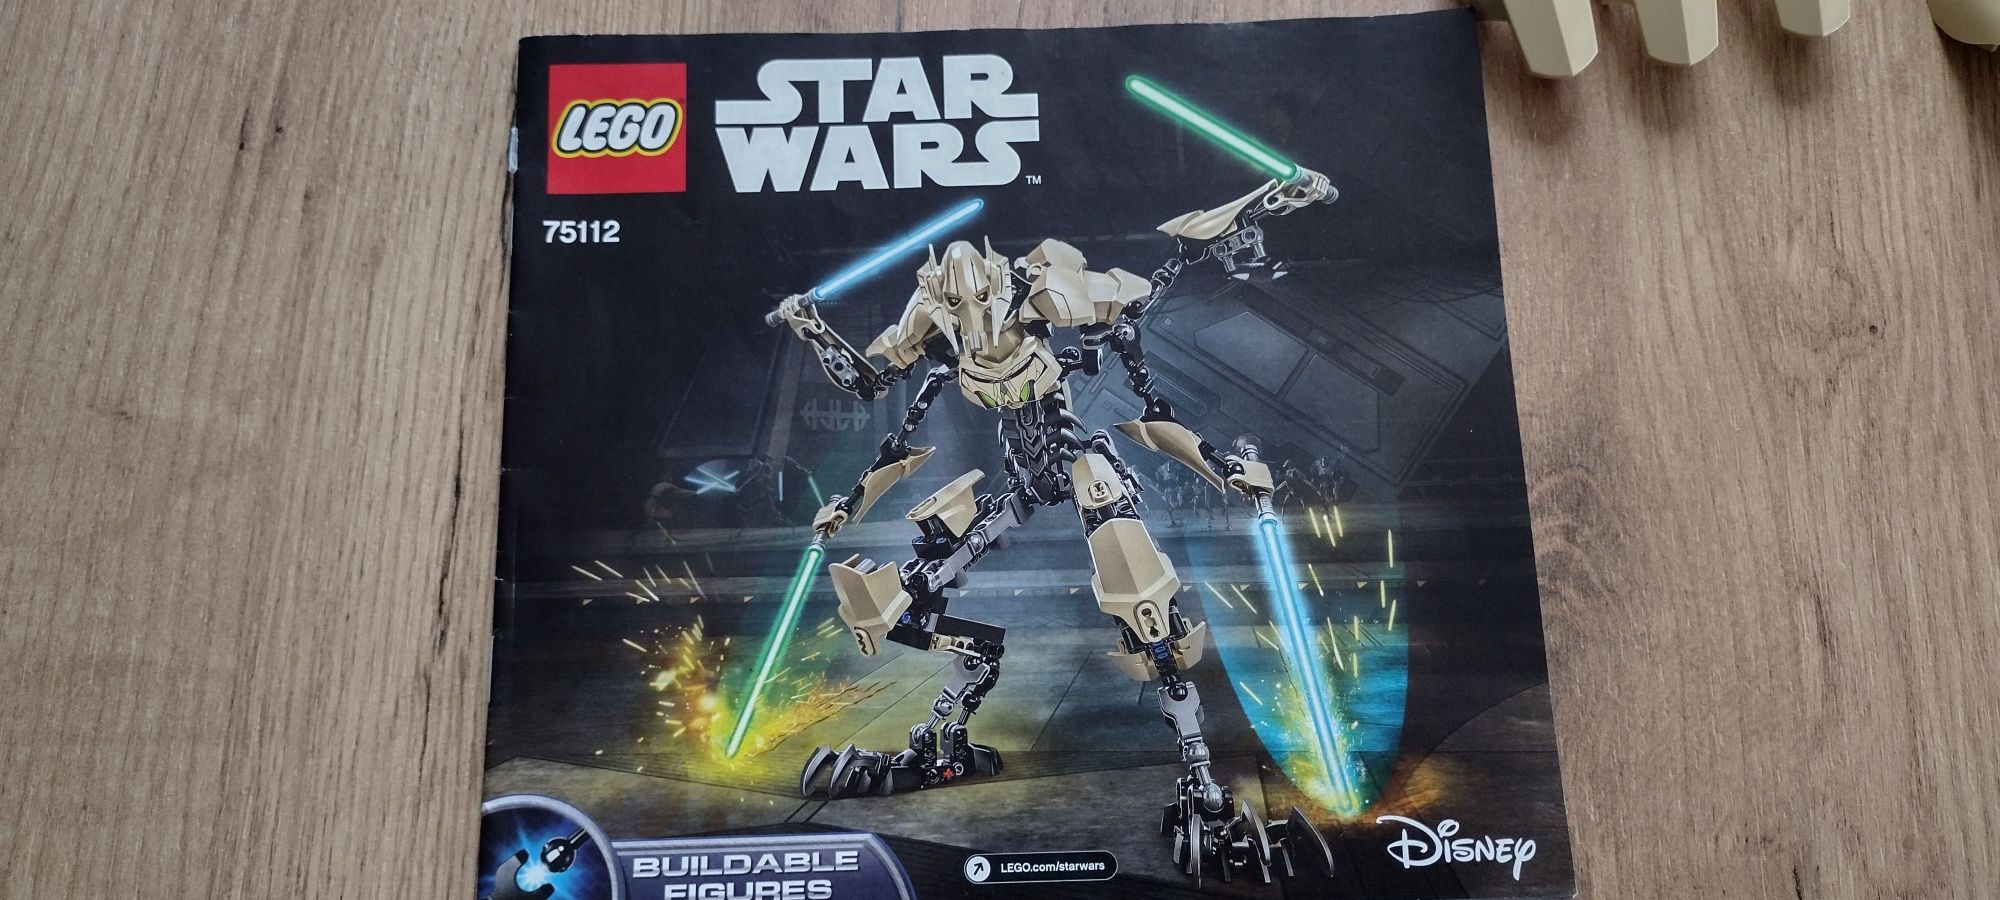 Lego 75112 Star Wars Generał Grievous